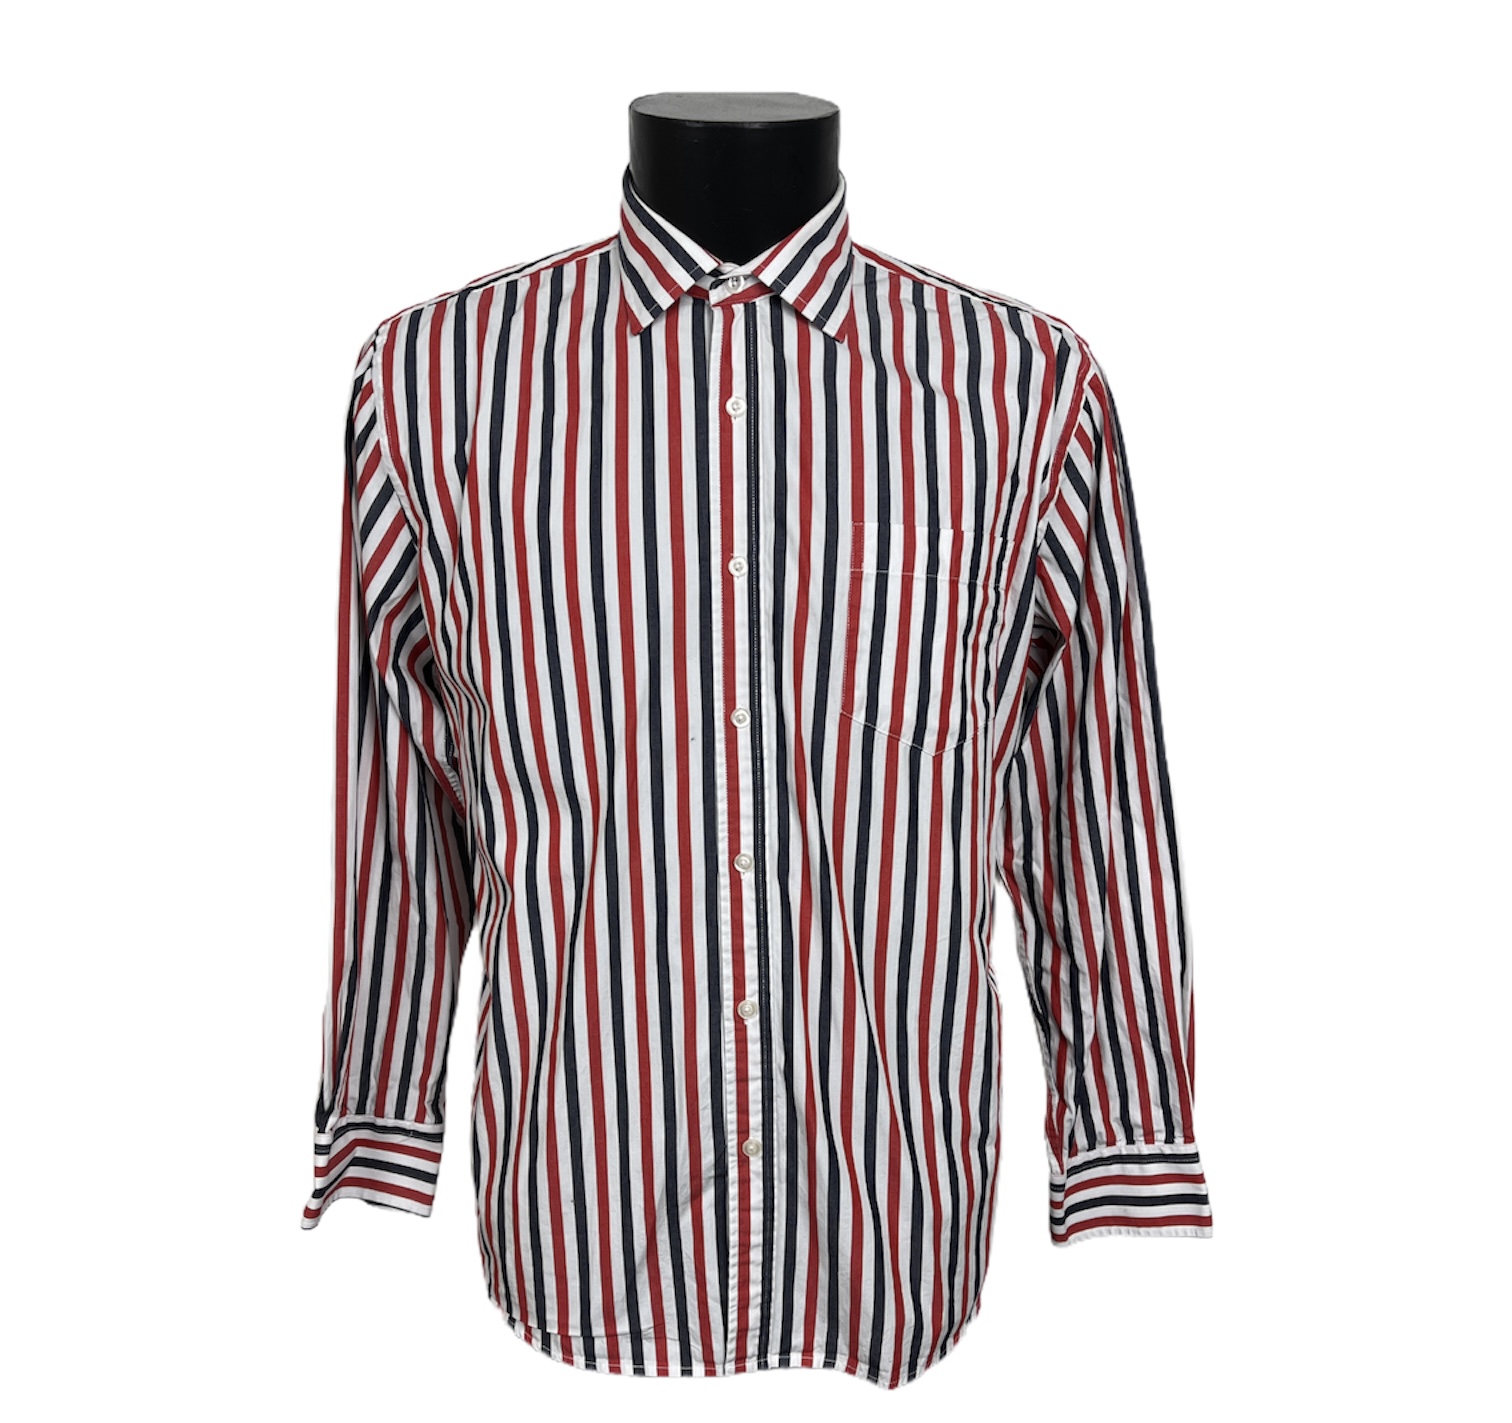 Camicia vintage a maniche lunghe bianca a righe verticali alternate rosse e blu con bottoni bianchi